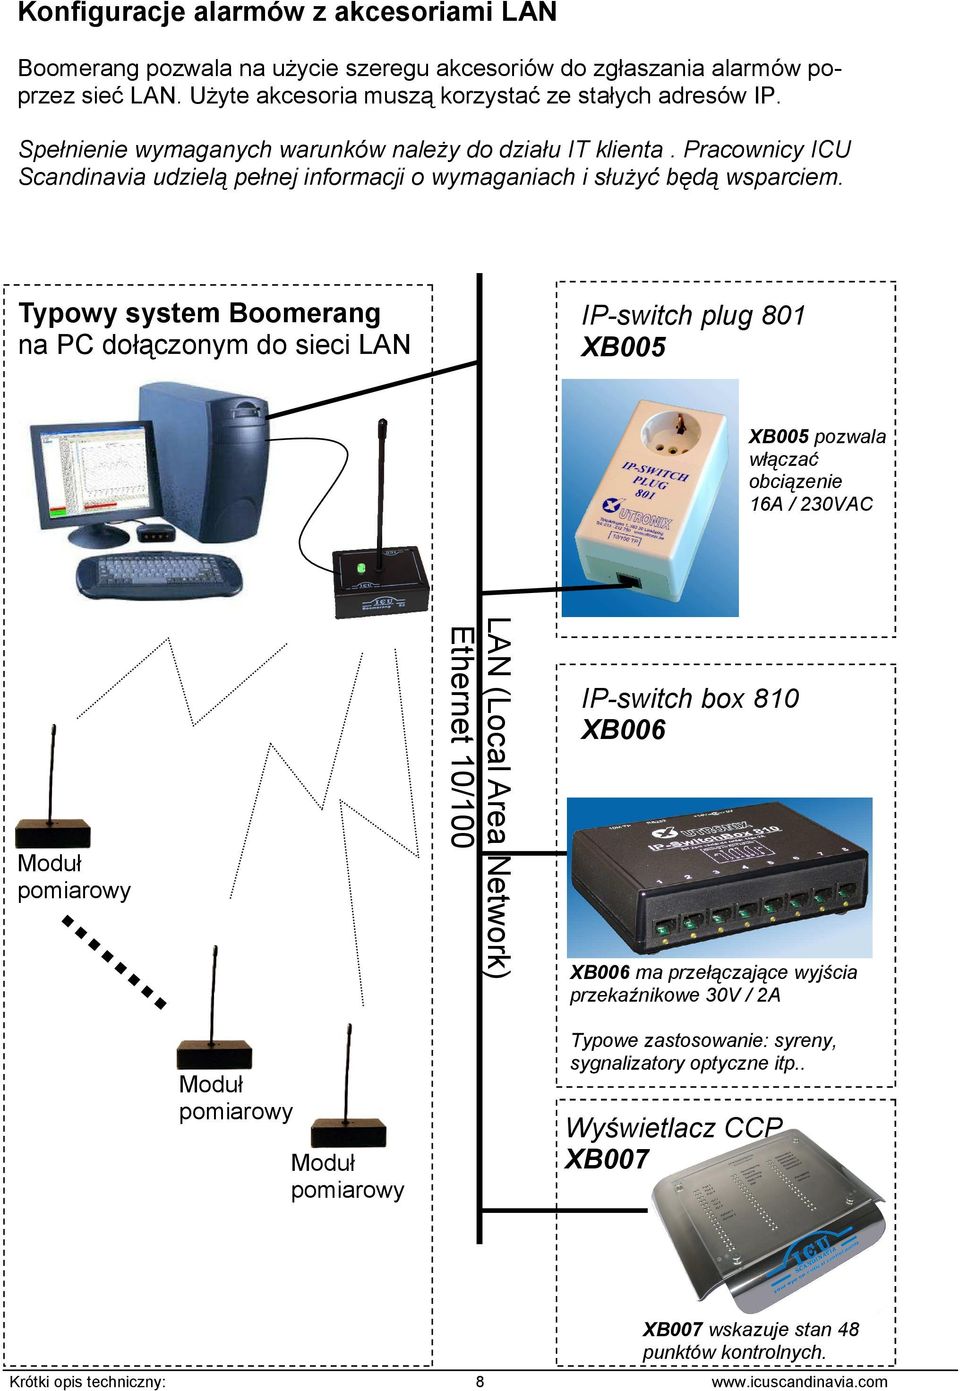 Typowy system Boomerang na PC dołączonym do sieci LAN IP-switch plug 801 XB005 XB005 pozwala włączać obciązenie 16A / 230VAC LAN (Local Area Network) Ethernet 10/100 IP-switch box 810